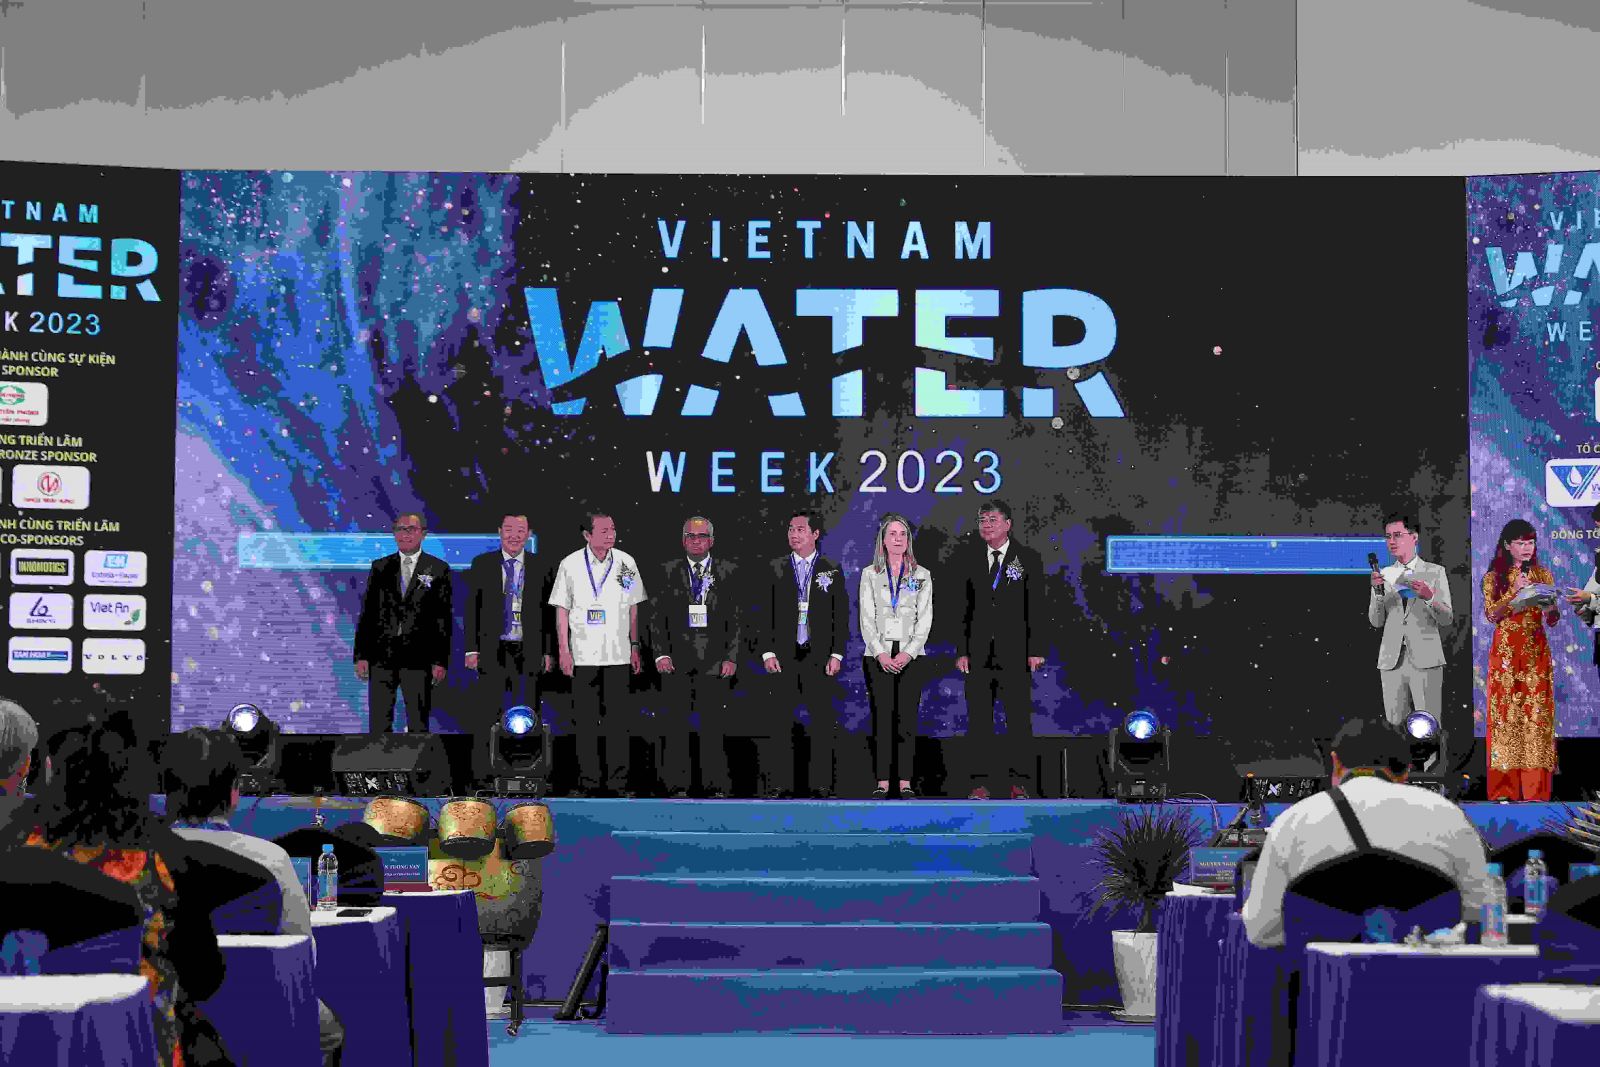 2875/15 quốc gia, 30 tổ chức quốc tế dự khai mạc Tuần lễ Nước Việt Nam - Vietnam Water Week 2023